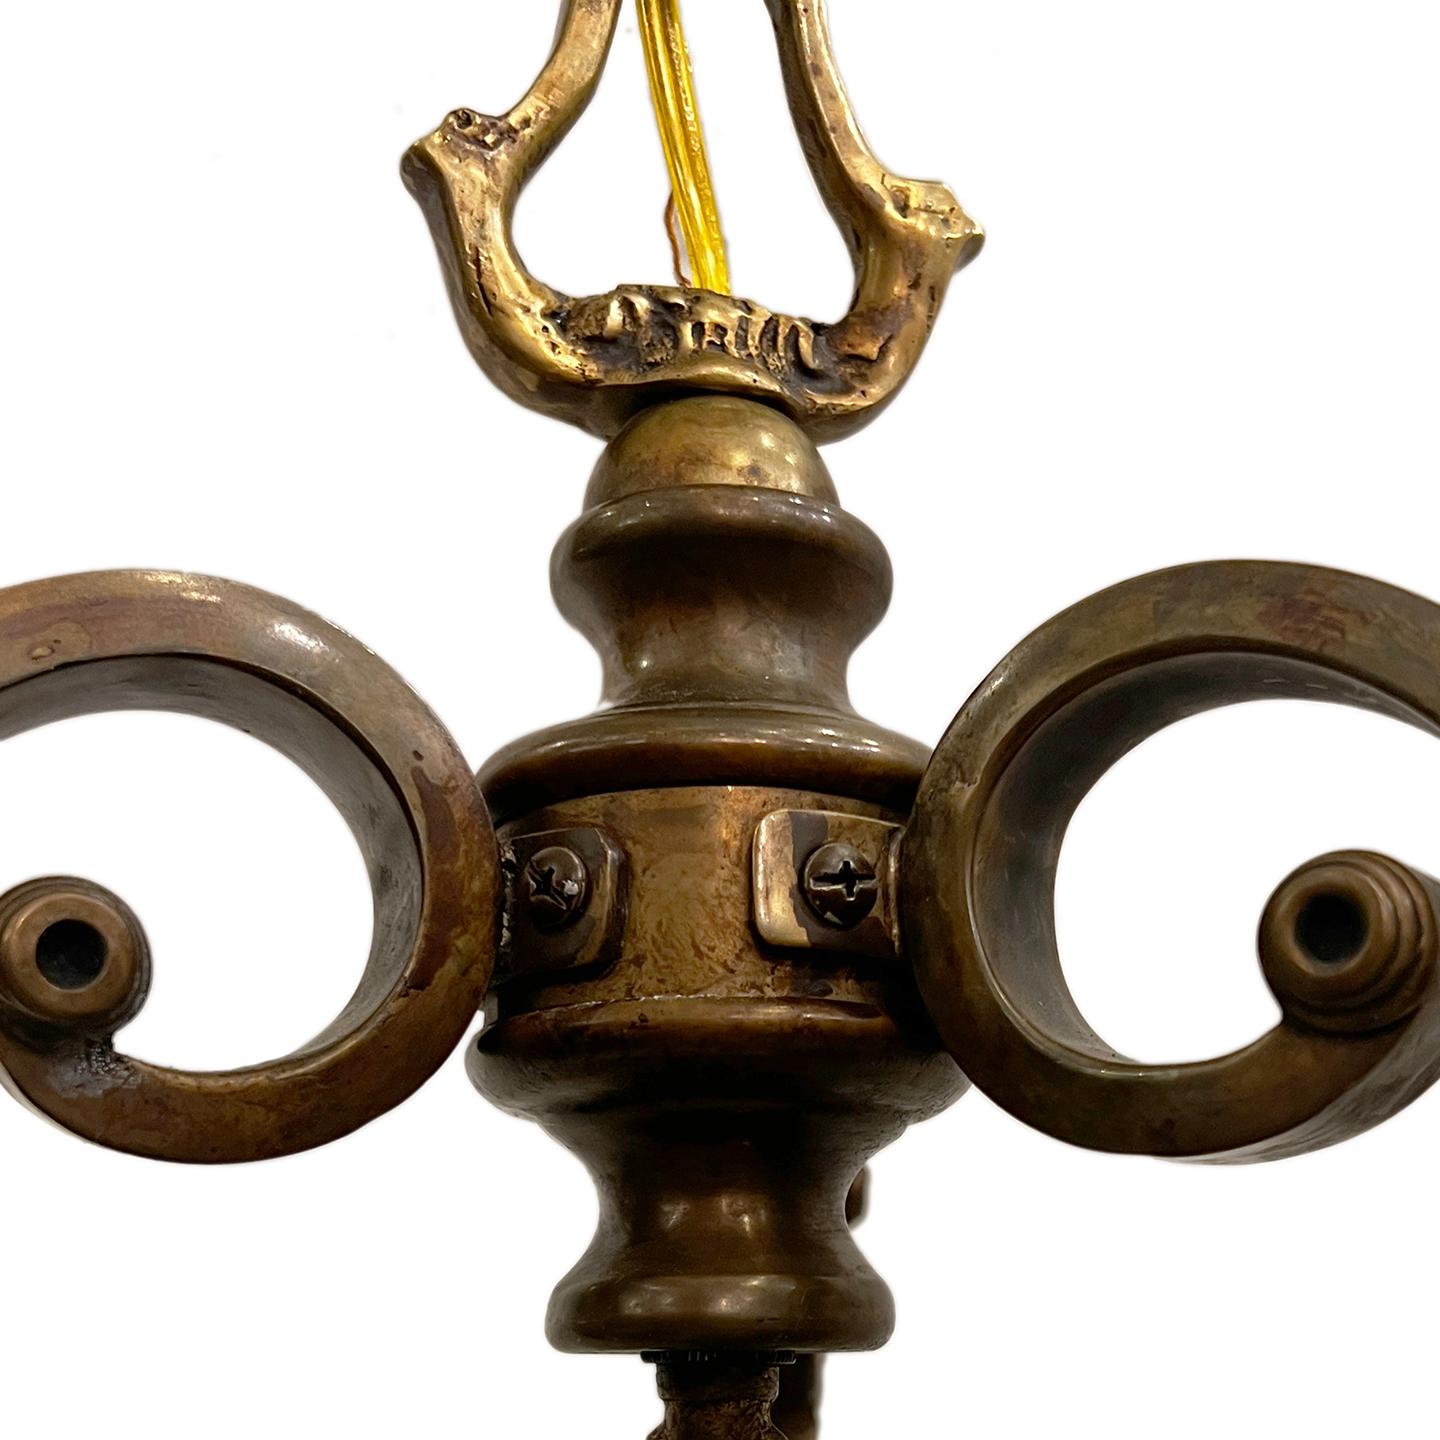 Lanterne anglaise en bronze patiné des années 1920 avec verre gravé et 3 lumières.

Mesures :
Chute : 29